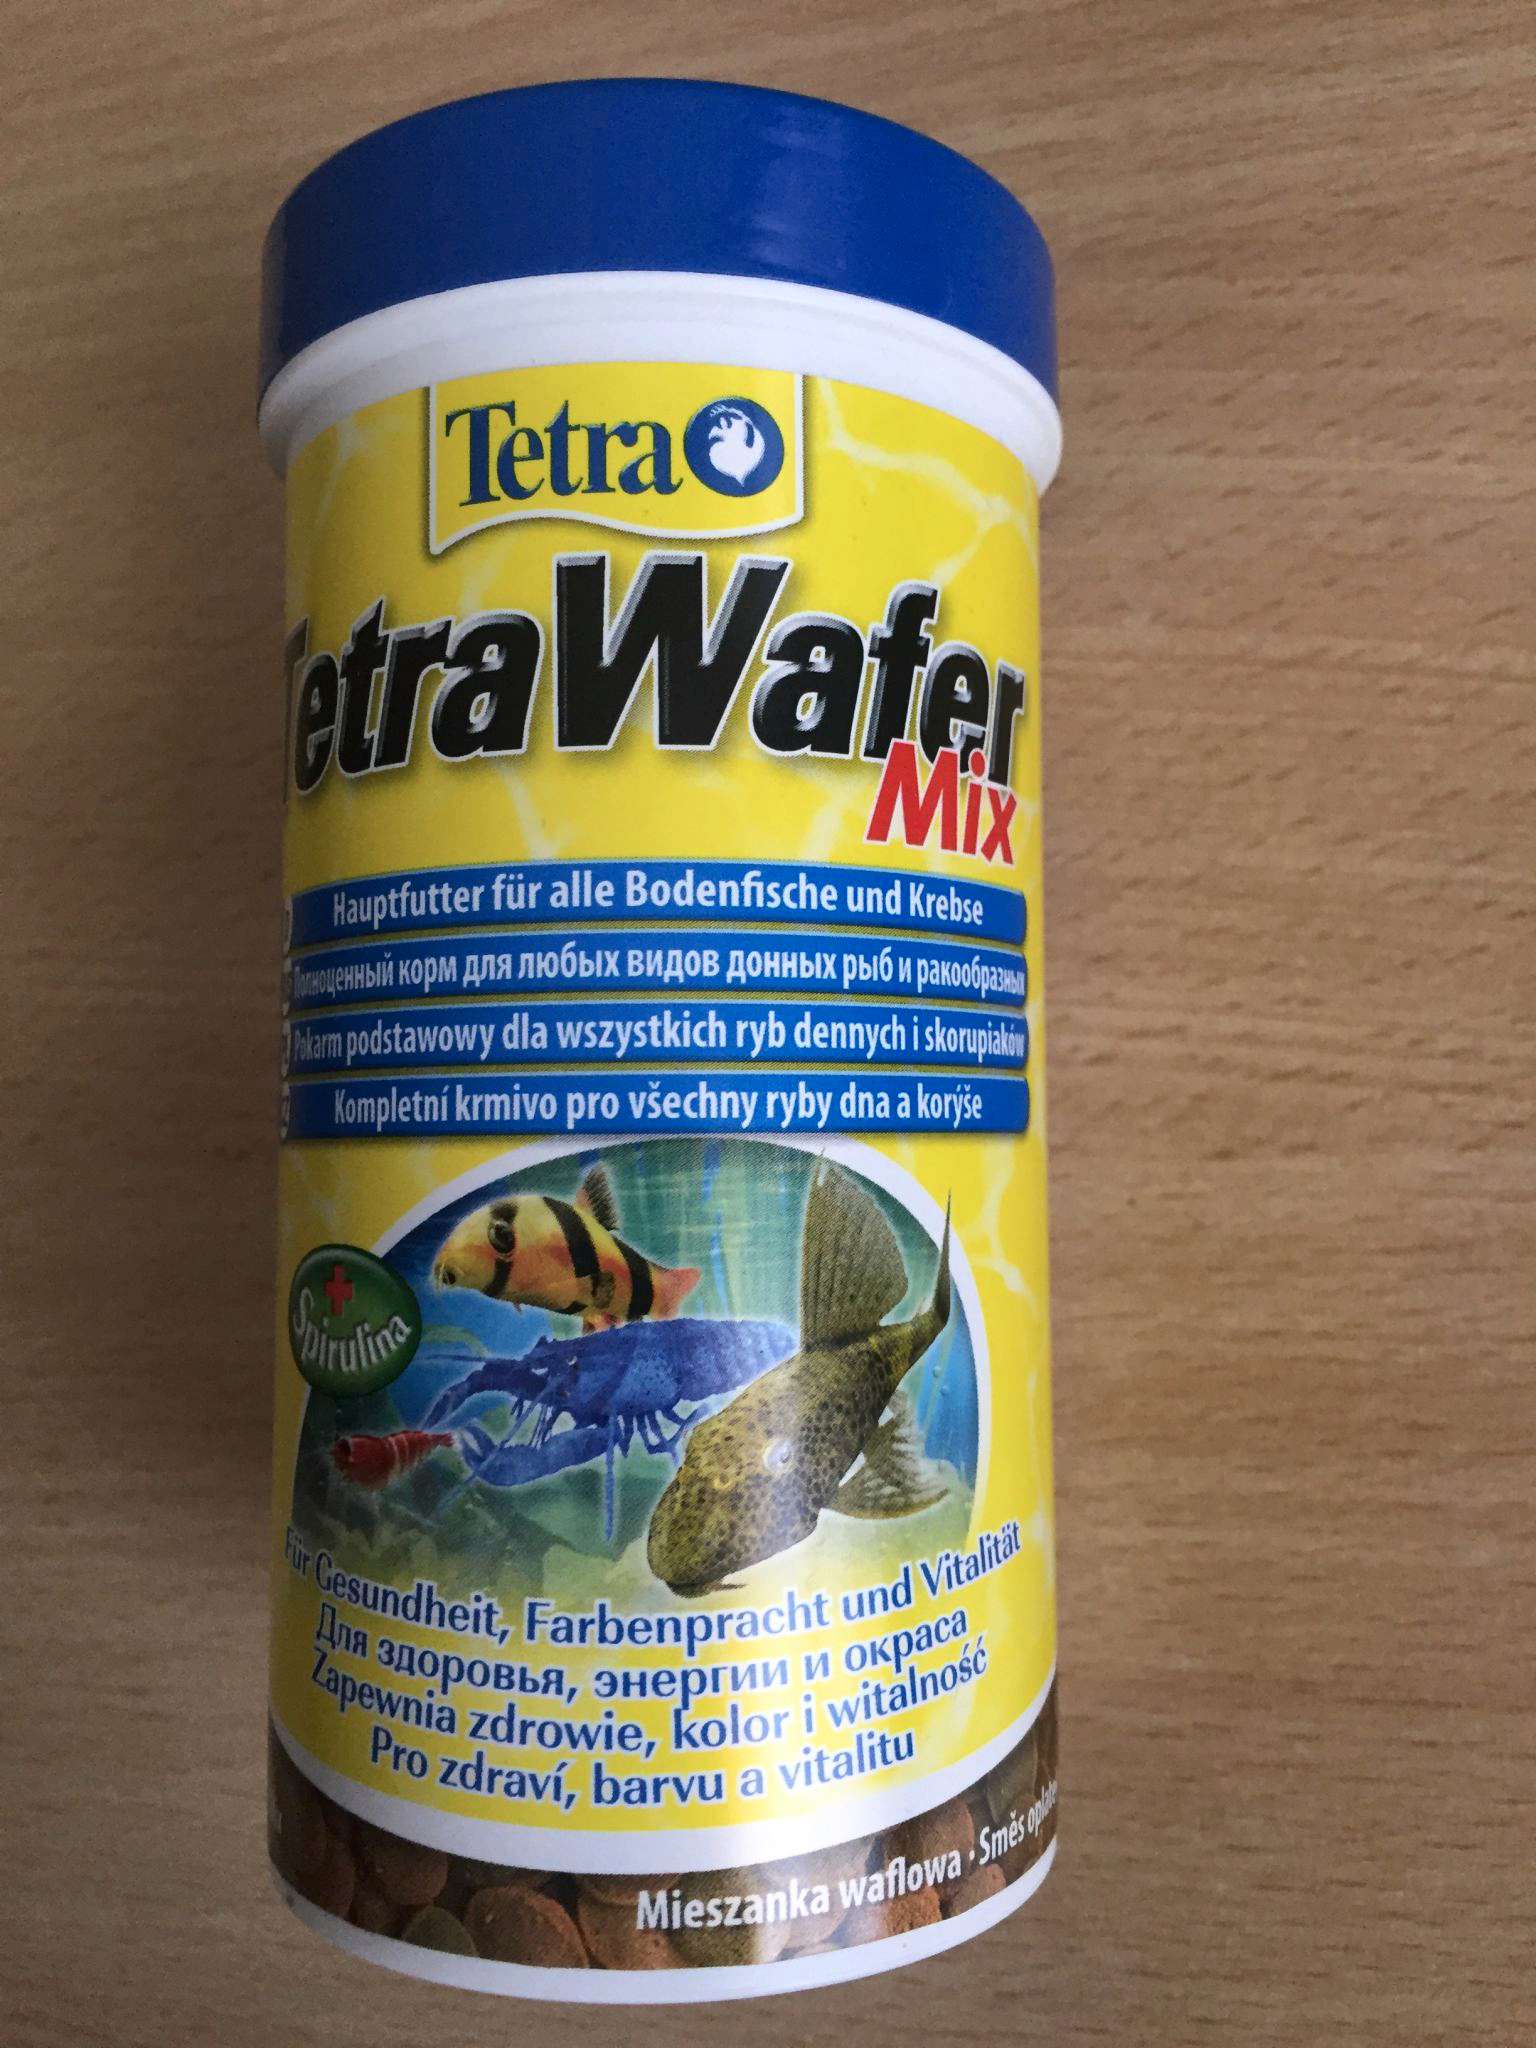 Купить корм для рыб Tetra Wafer Mix чипсы для всех донных рыб и ракообразных  250 мл 198890 в интернет-магазине ОНЛАЙН ТРЕЙД.РУ